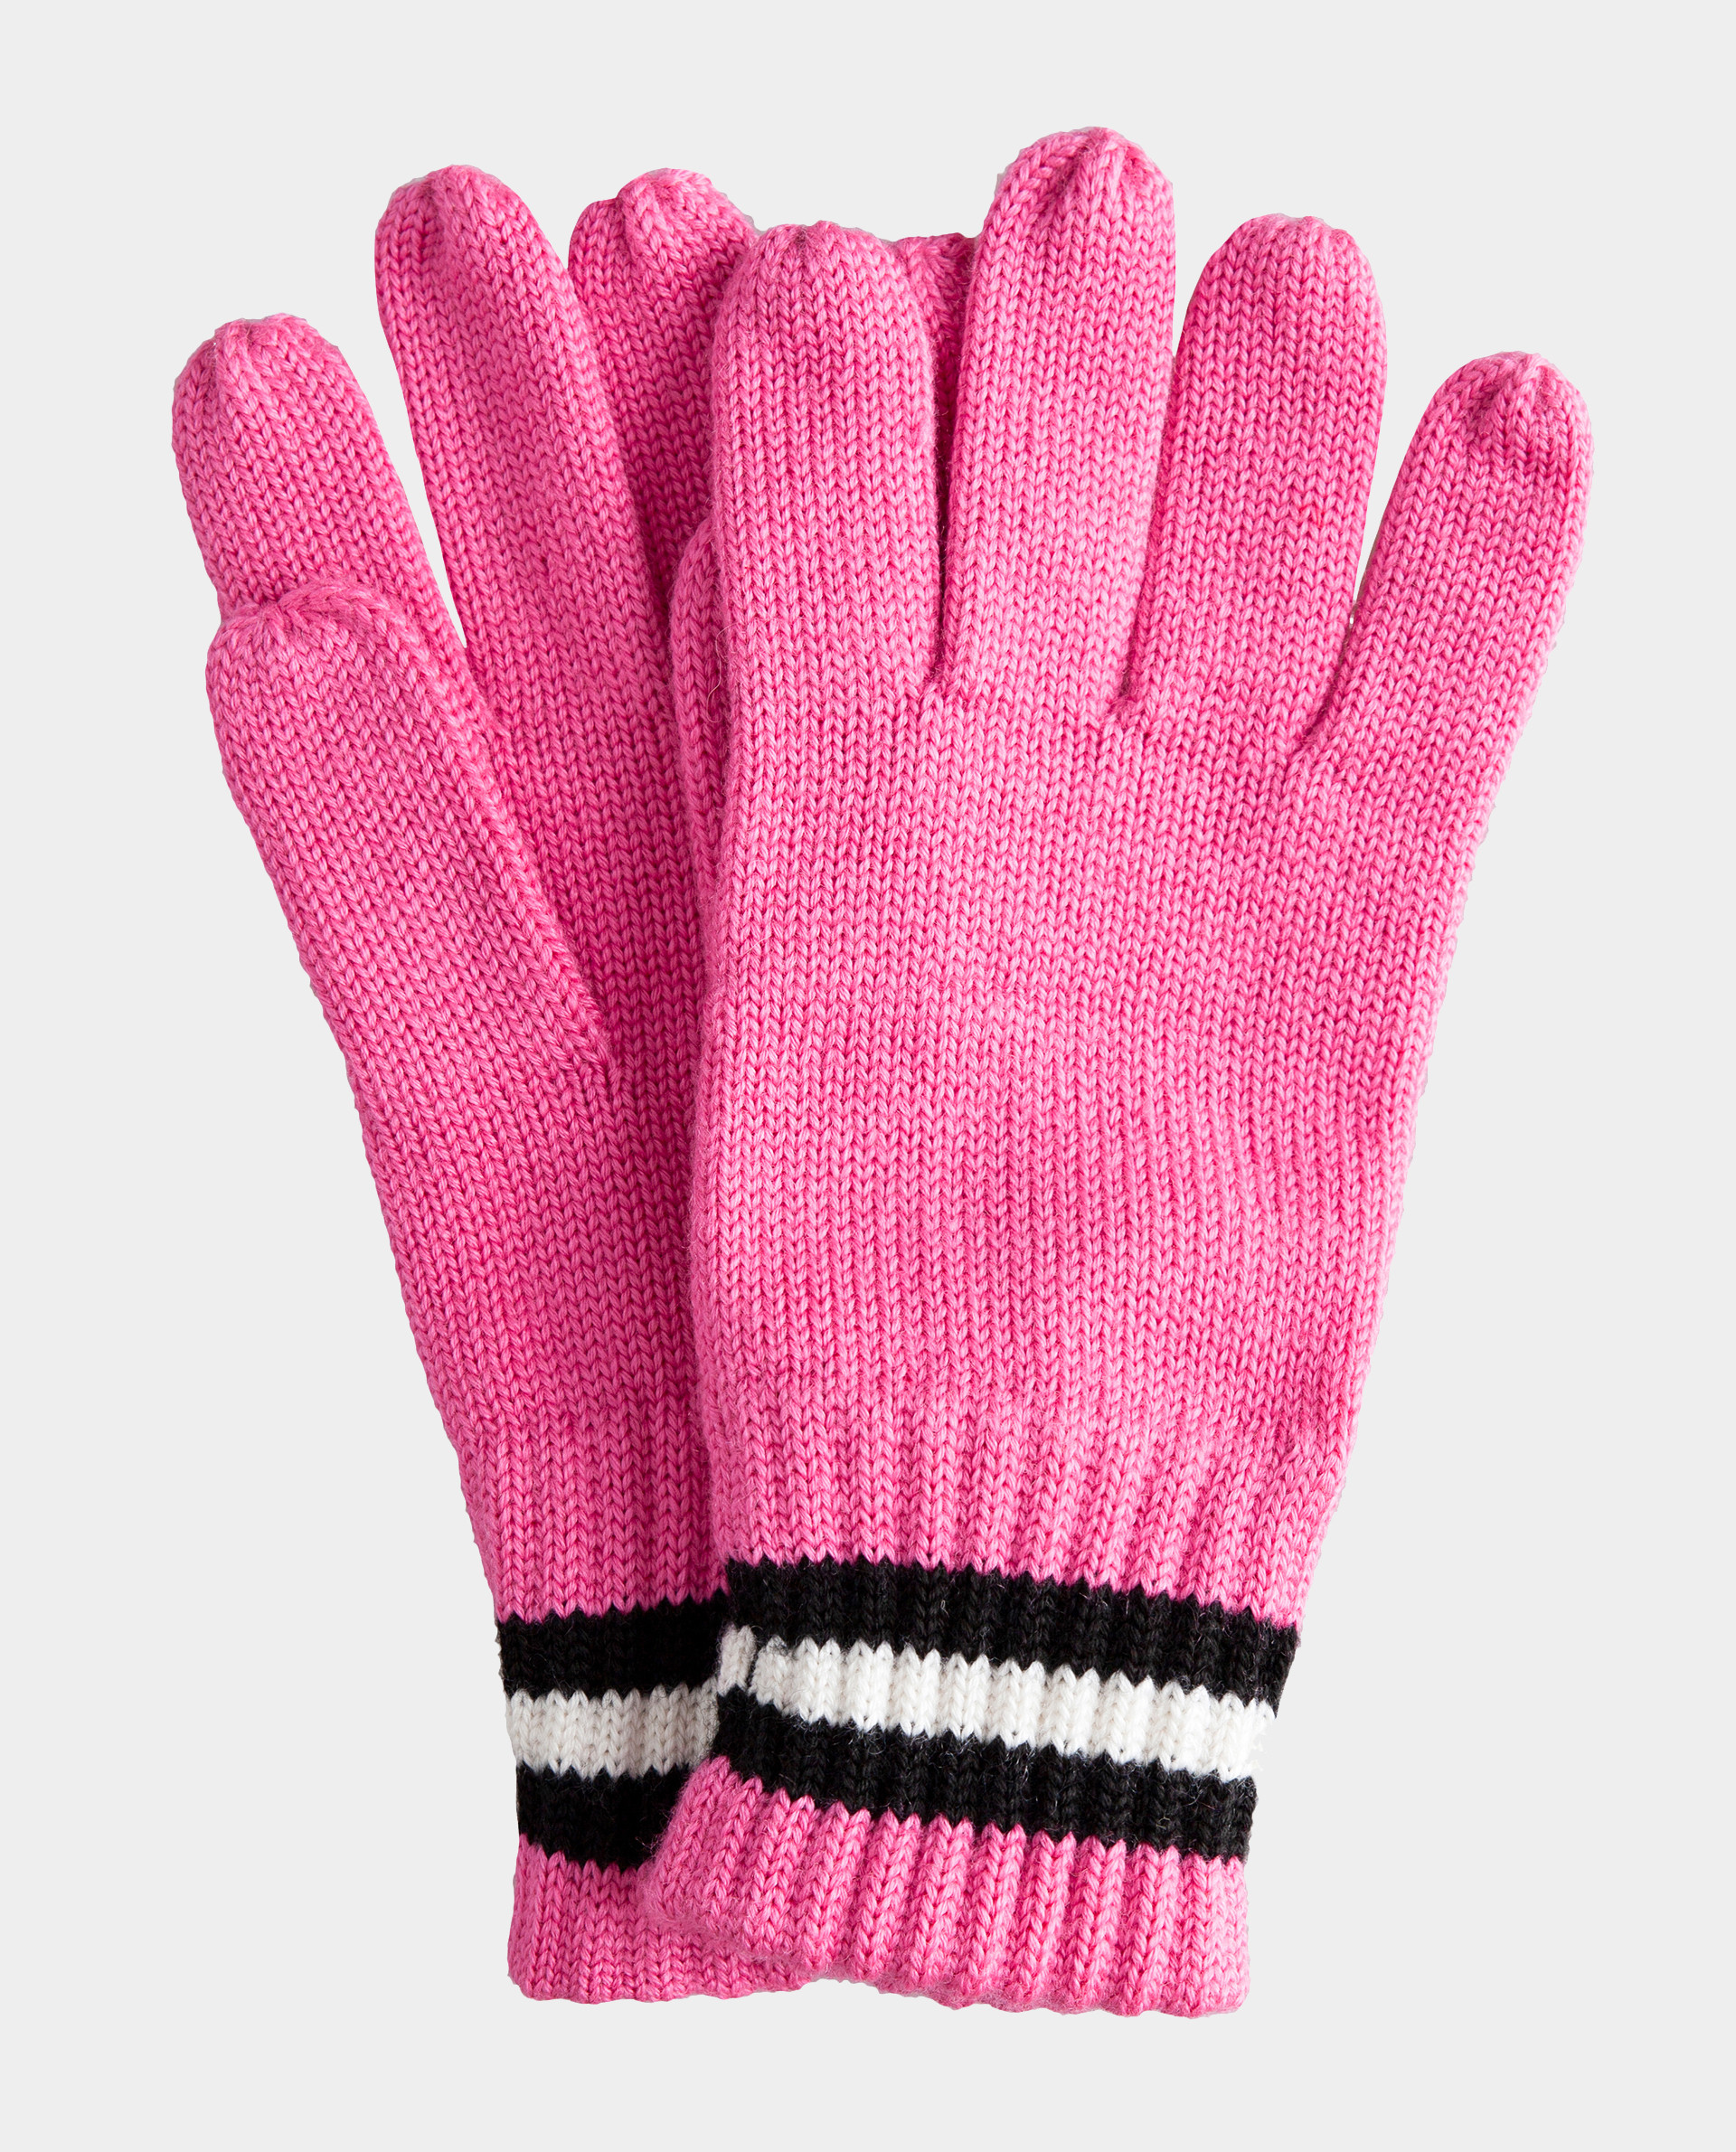 Купить розовые перчатки. Перчатки Gulliver. Розовые перчатки. Розовые вязаные перчатки. Розовые перчатки строительные\.